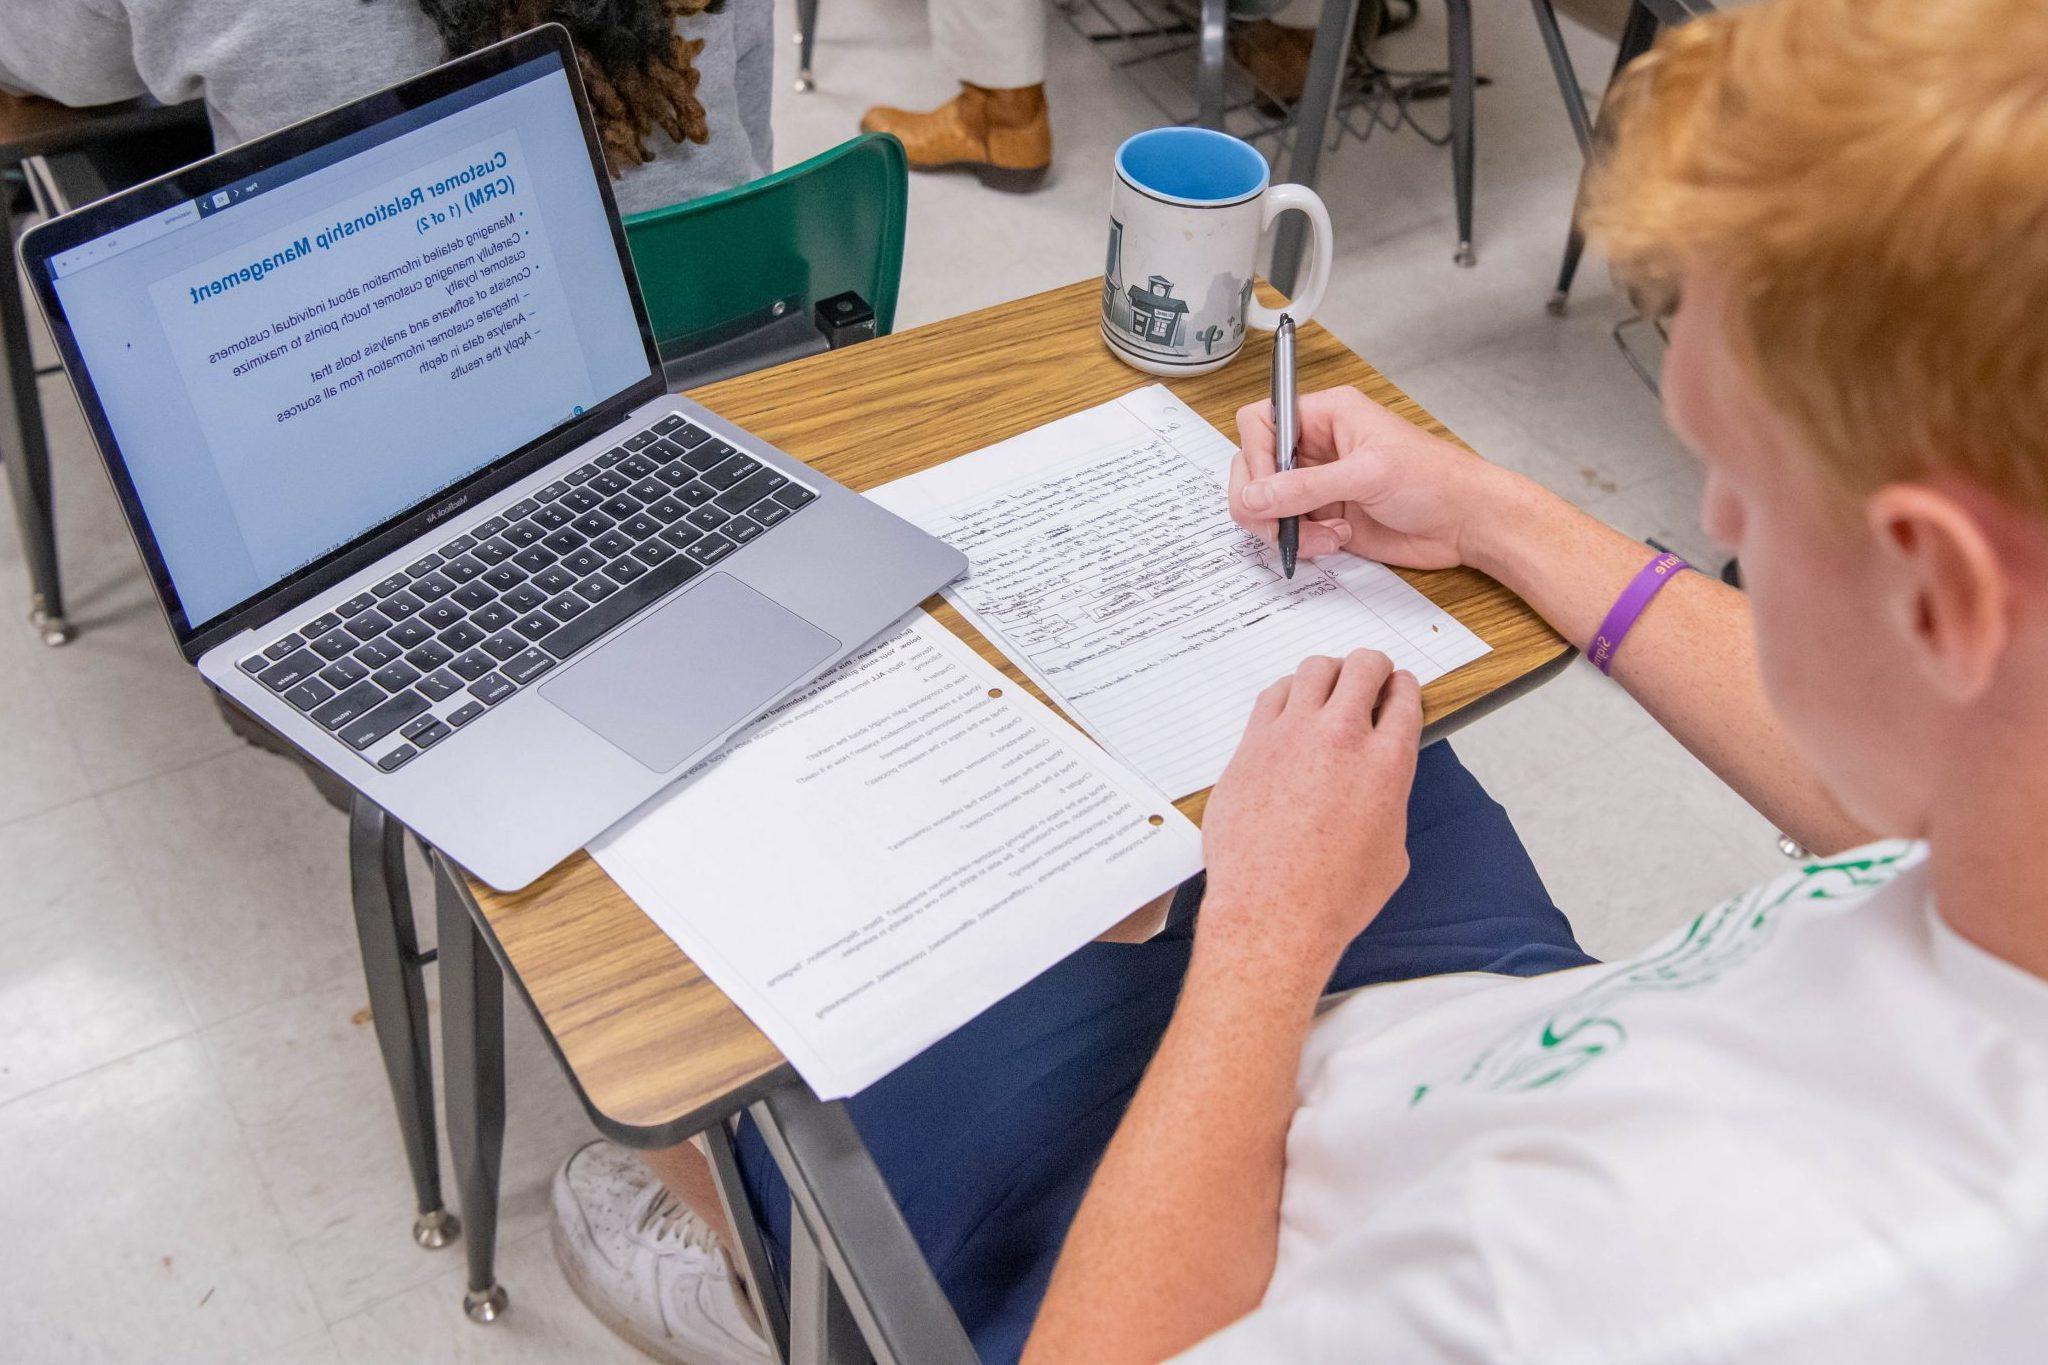 坐在教室课桌前的学生, 在纸上做笔记, 看着笔记本电脑上打开的ppt.